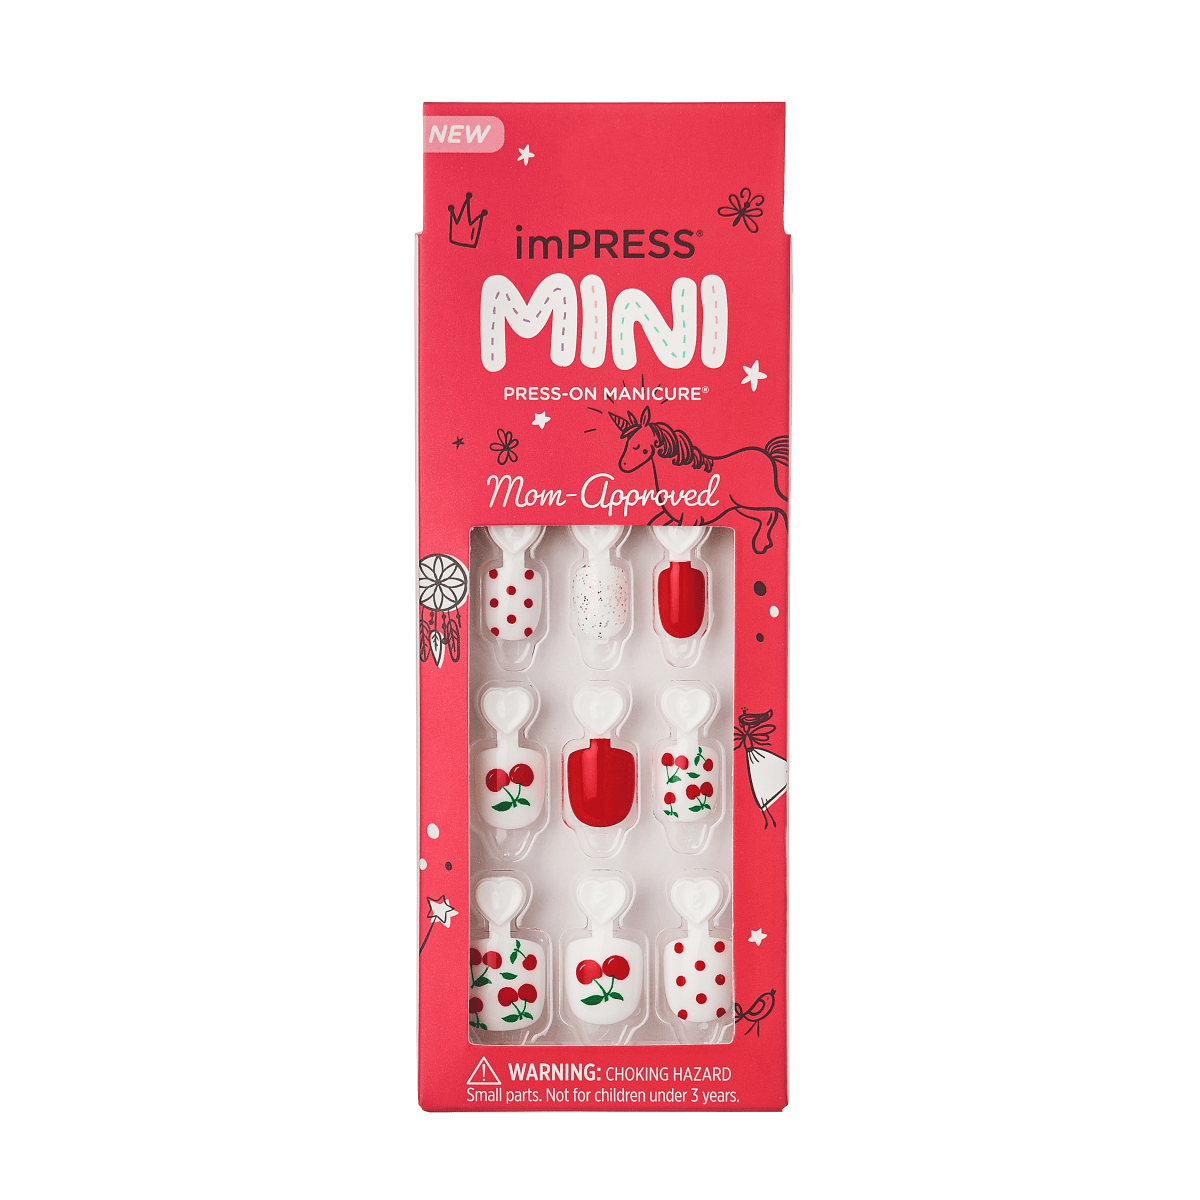 imPRESS MINI Press-On Manicure - Cutie Pie